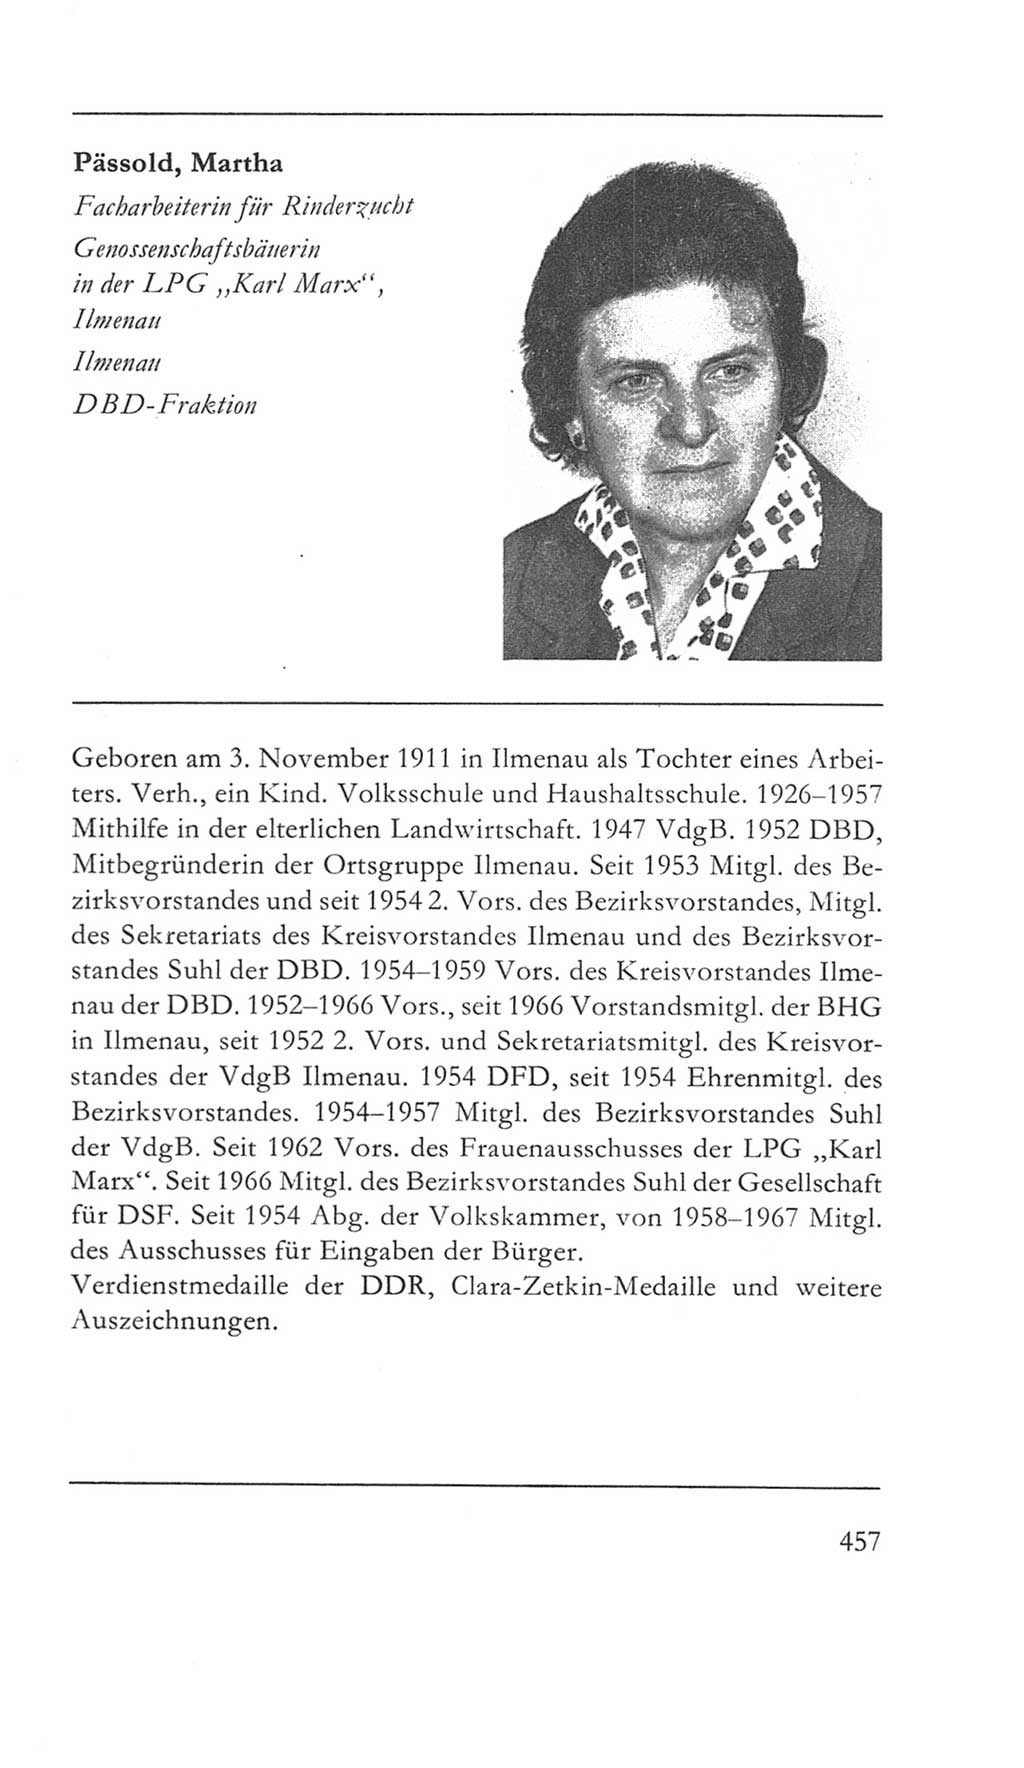 Volkskammer (VK) der Deutschen Demokratischen Republik (DDR) 5. Wahlperiode 1967-1971, Seite 457 (VK. DDR 5. WP. 1967-1971, S. 457)